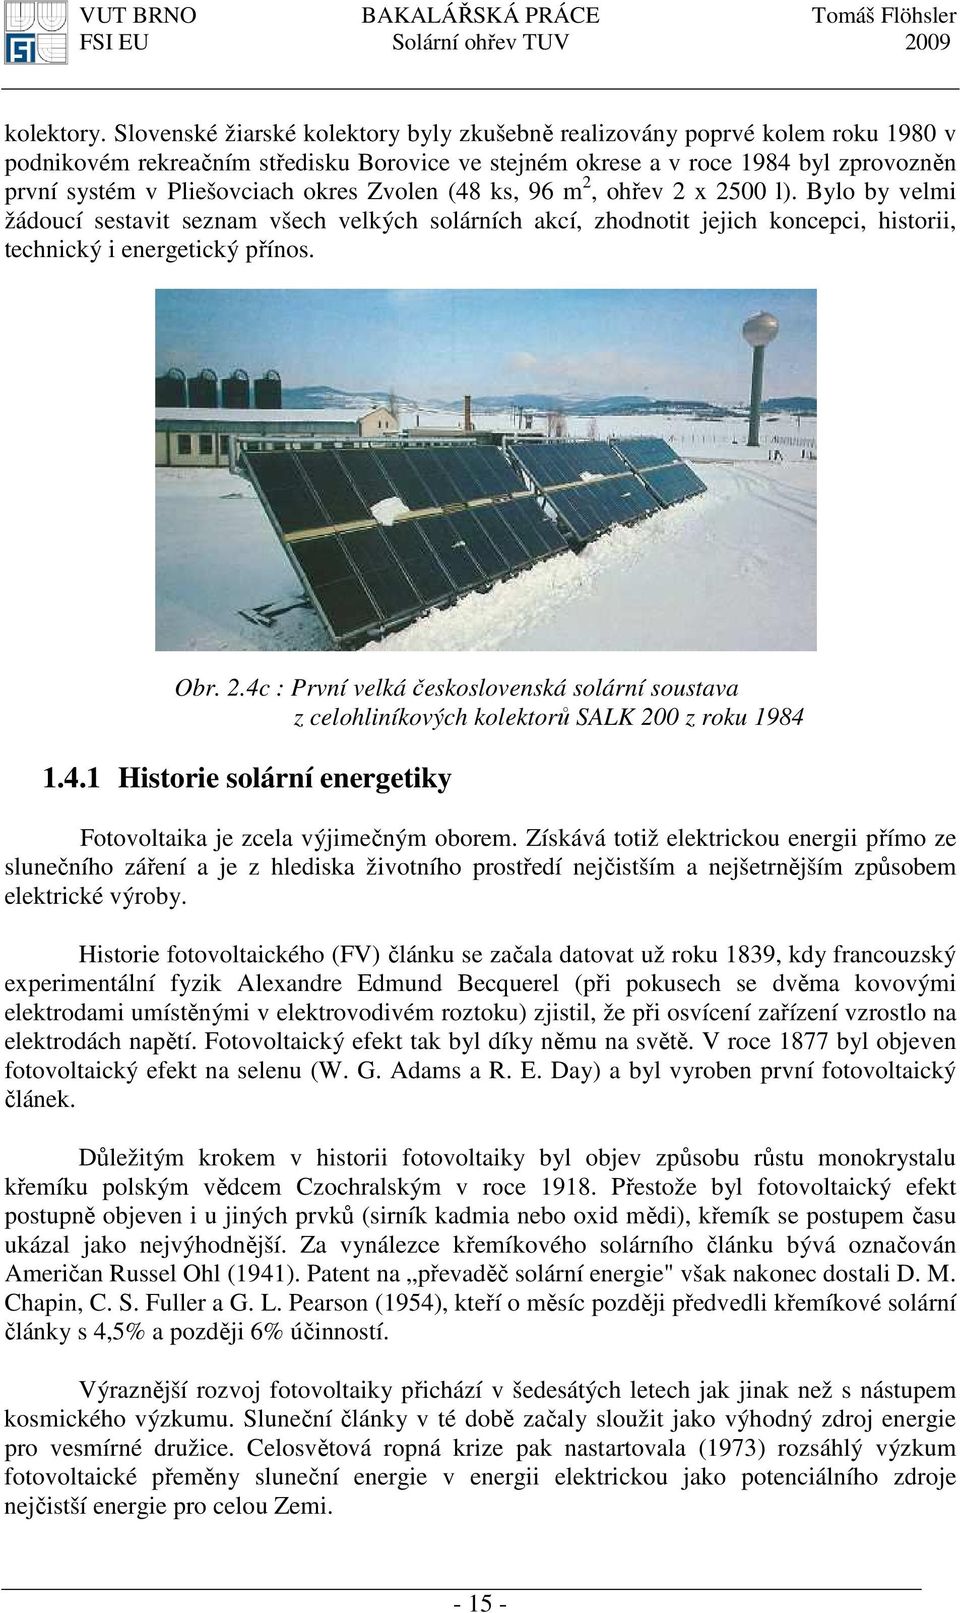 okres Zvolen (48 ks, 96 m 2, ohřev 2 x 2500 l). Bylo by velmi žádoucí sestavit seznam všech velkých solárních akcí, zhodnotit jejich koncepci, historii, technický i energetický přínos. Obr. 2.4c : První velká československá solární soustava z celohliníkových kolektorů SALK 200 z roku 1984 1.